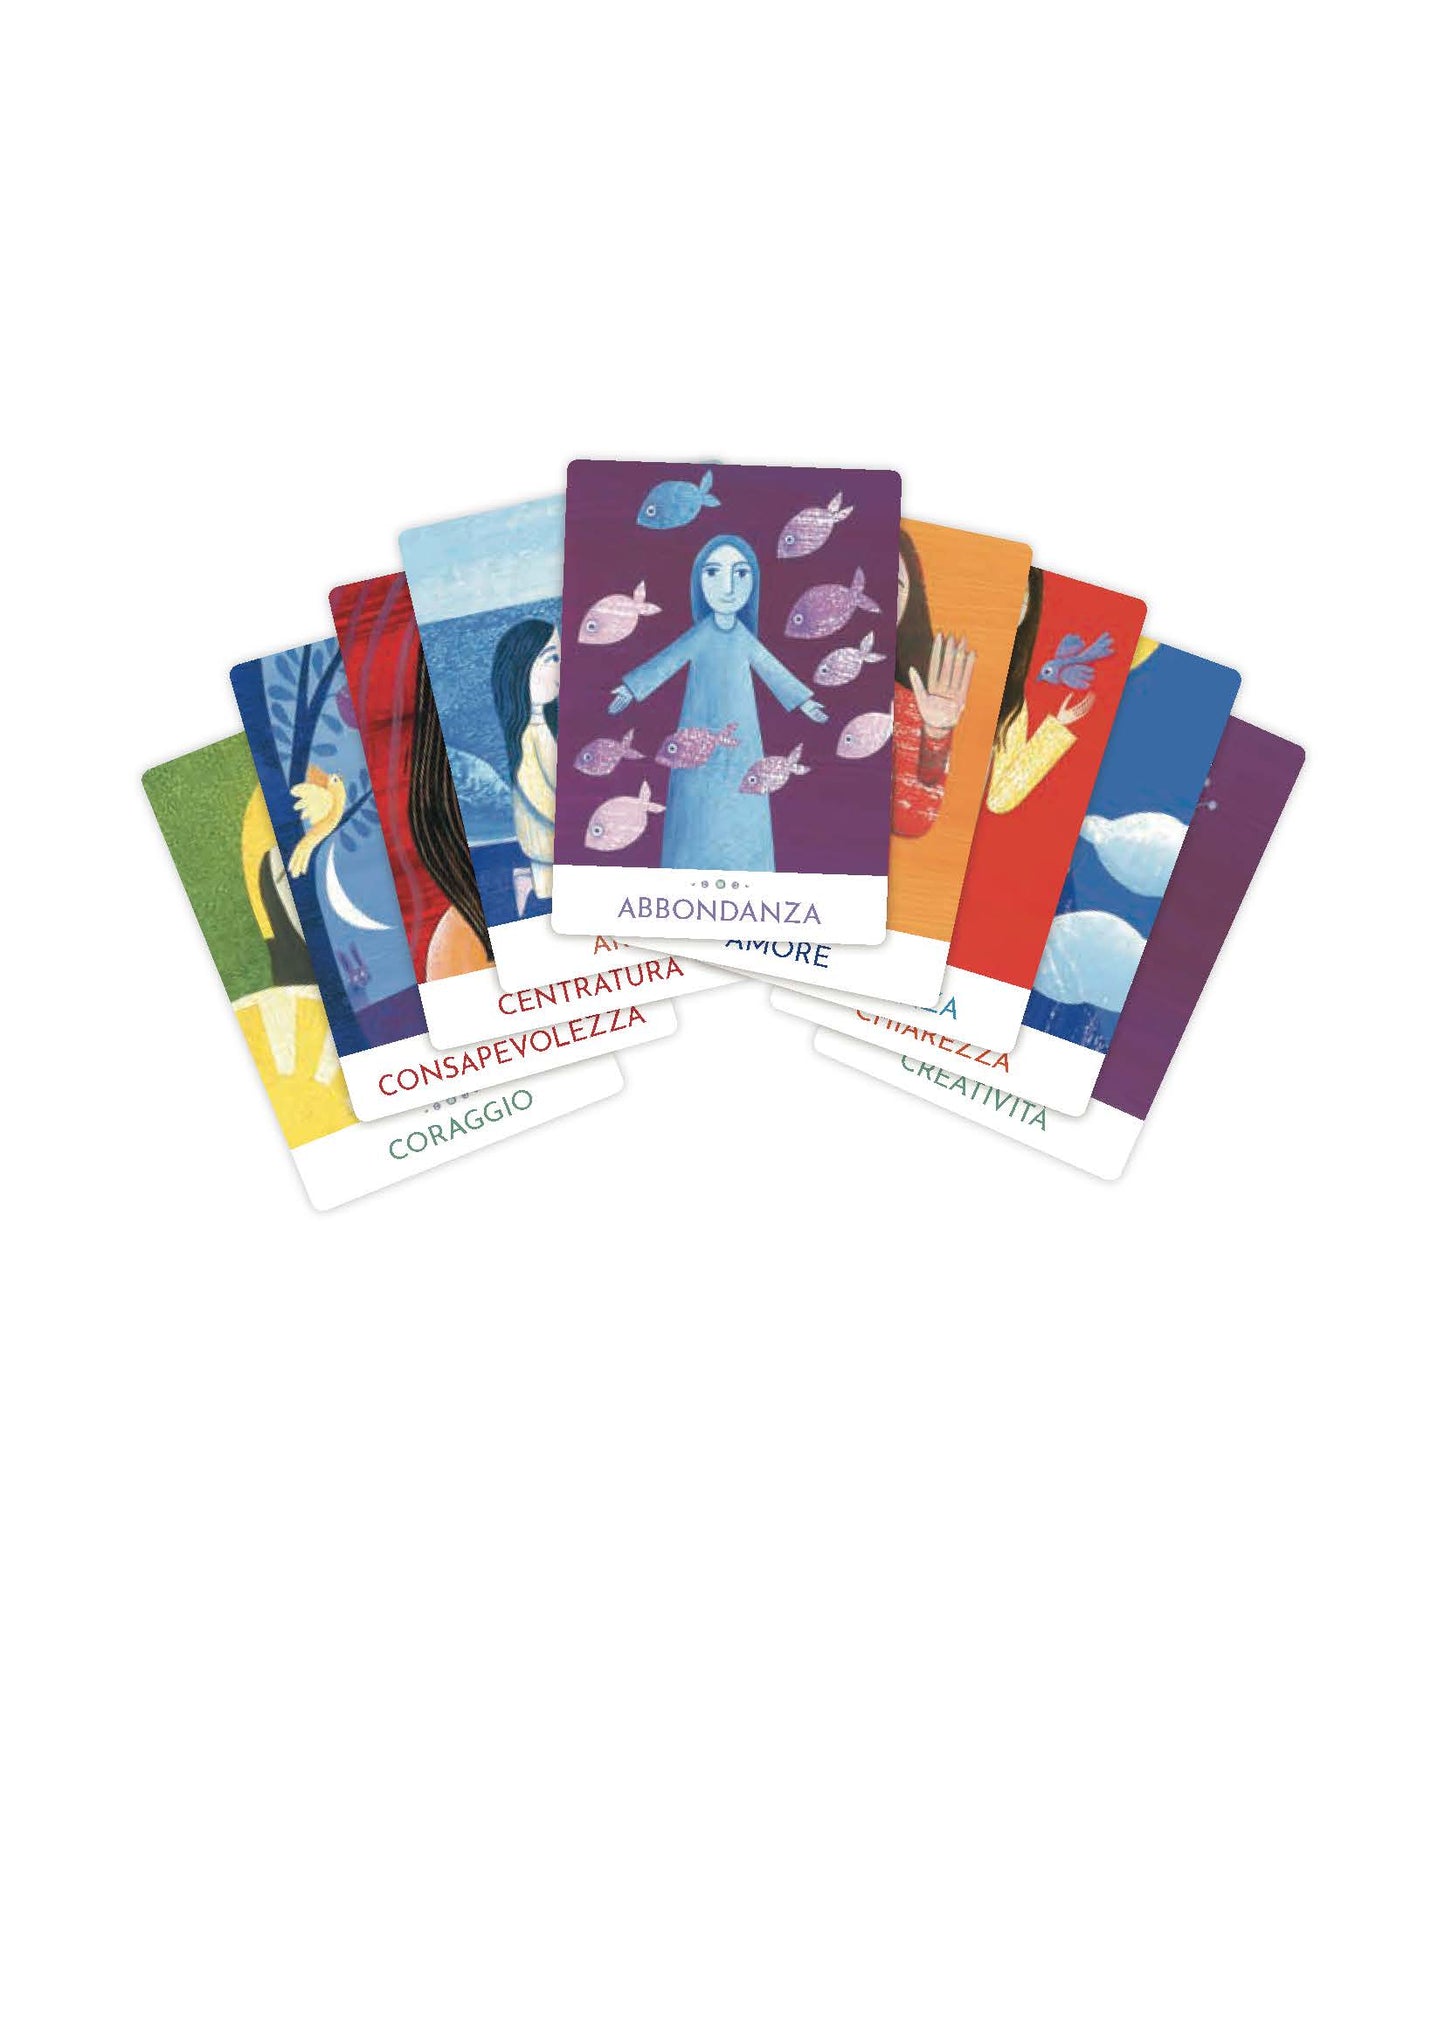 Le carte di Yogananda – Cofanetto con carte e libretto::40 carte illustrate per la guida supercosciente